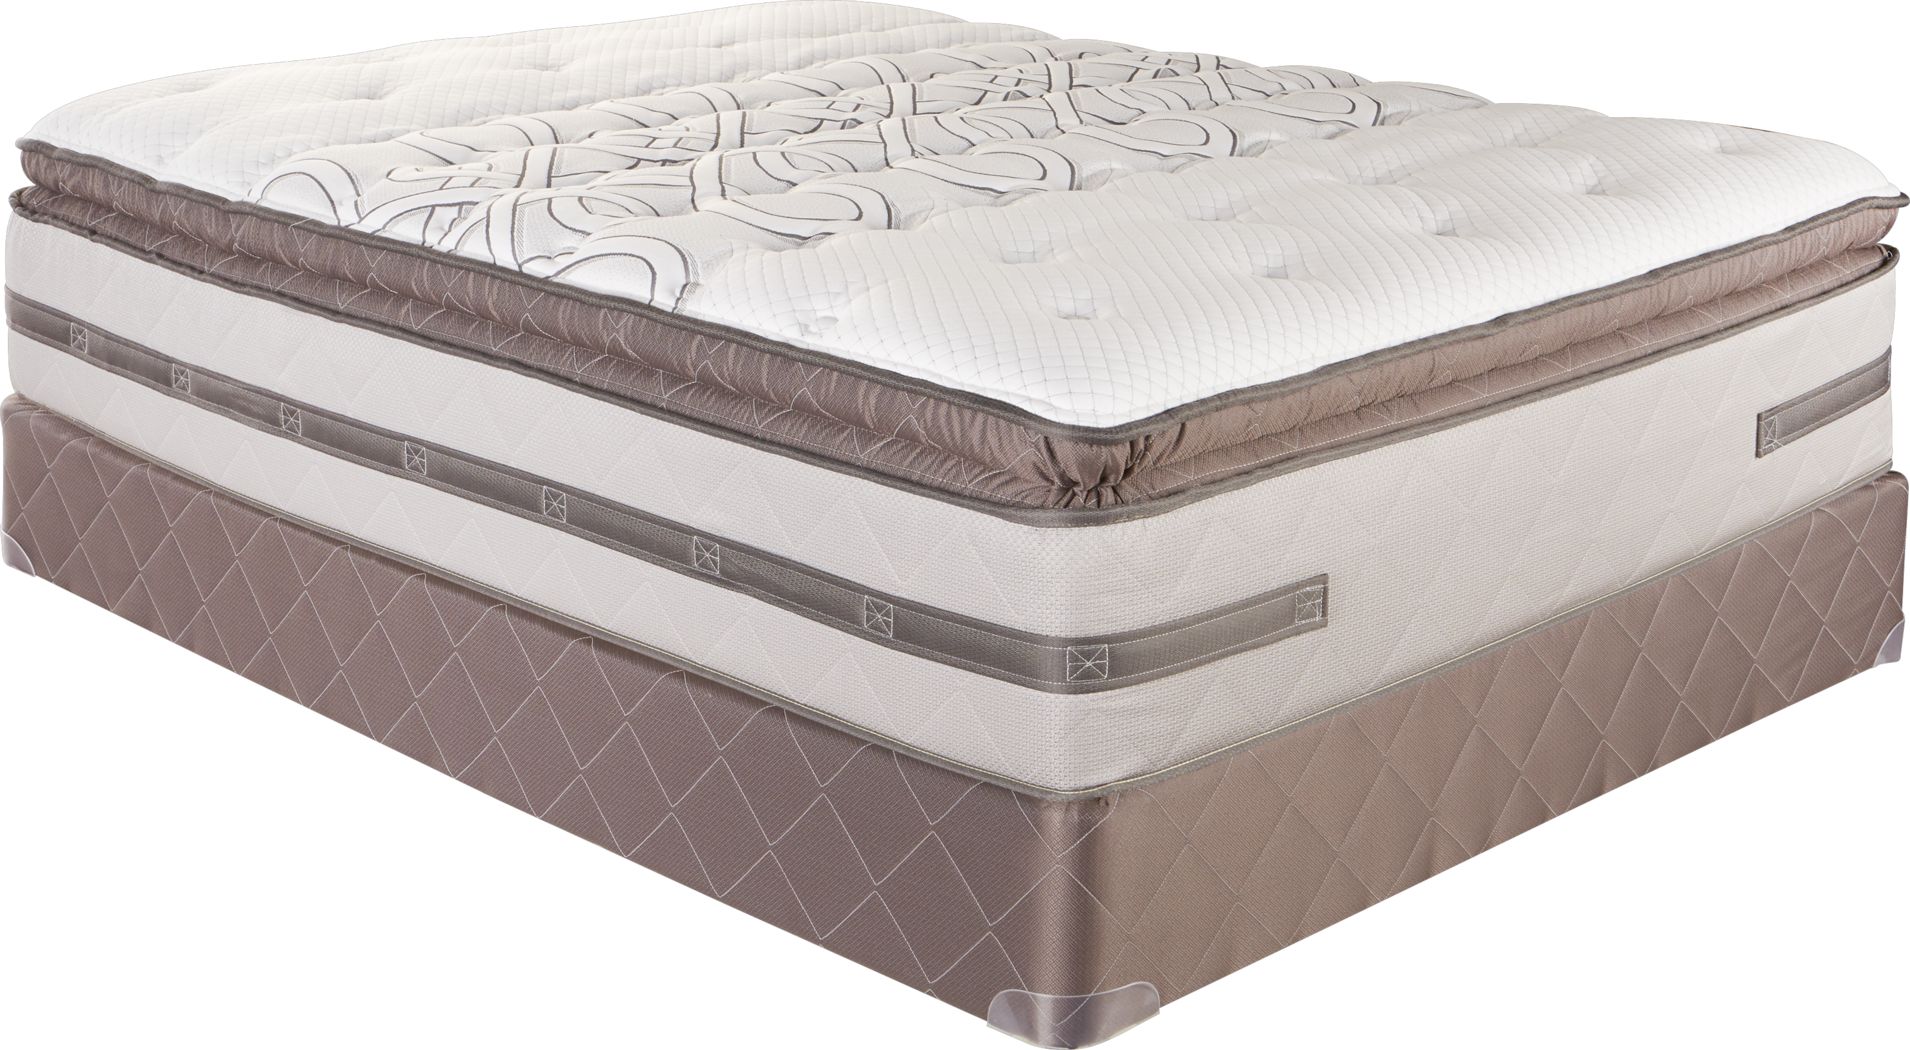 sealy westlake posturepedic platinum mattress